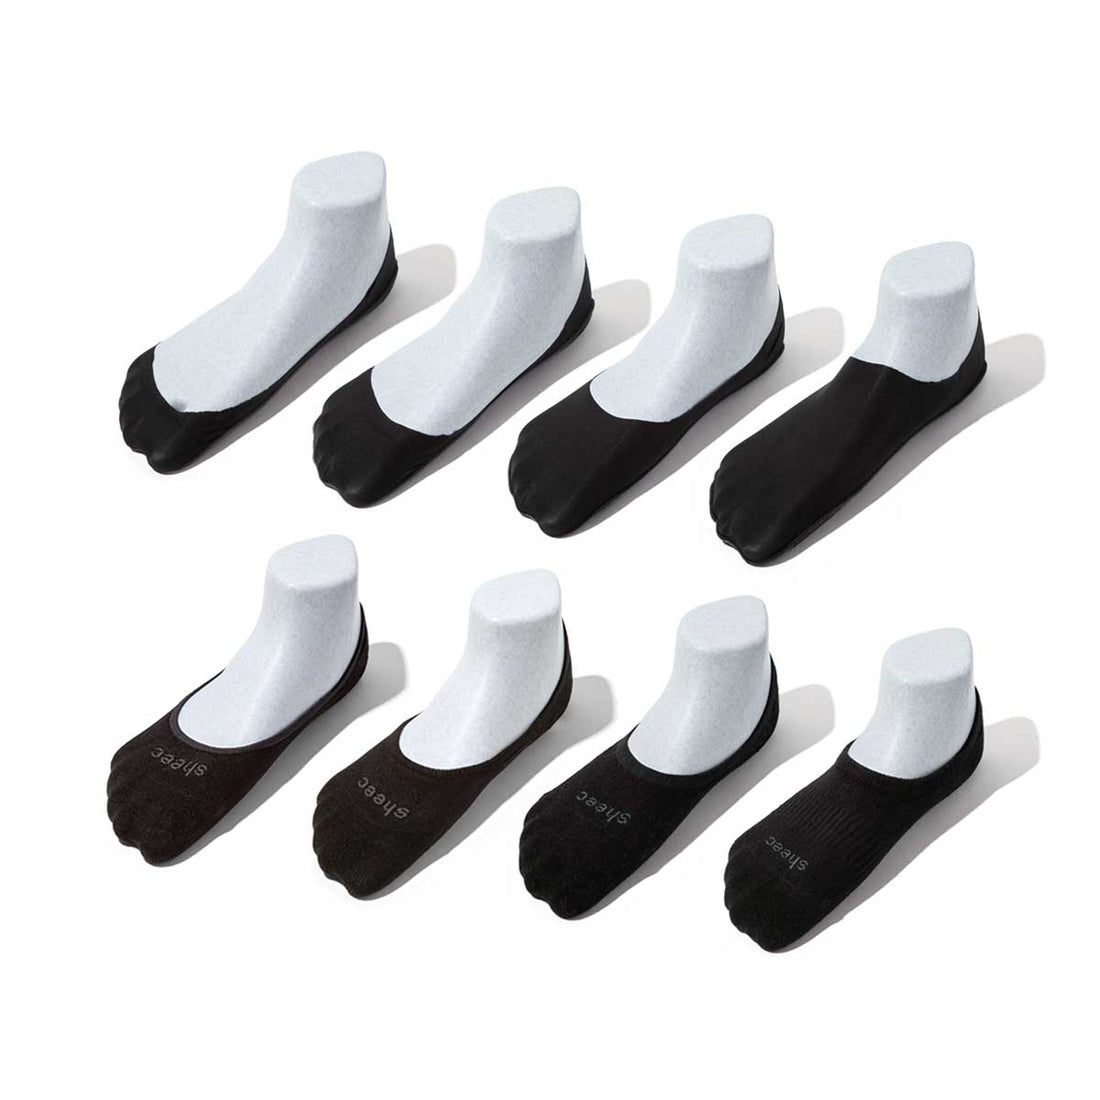 Women's Hidden Socks for All Shoe Types, Variety Pack